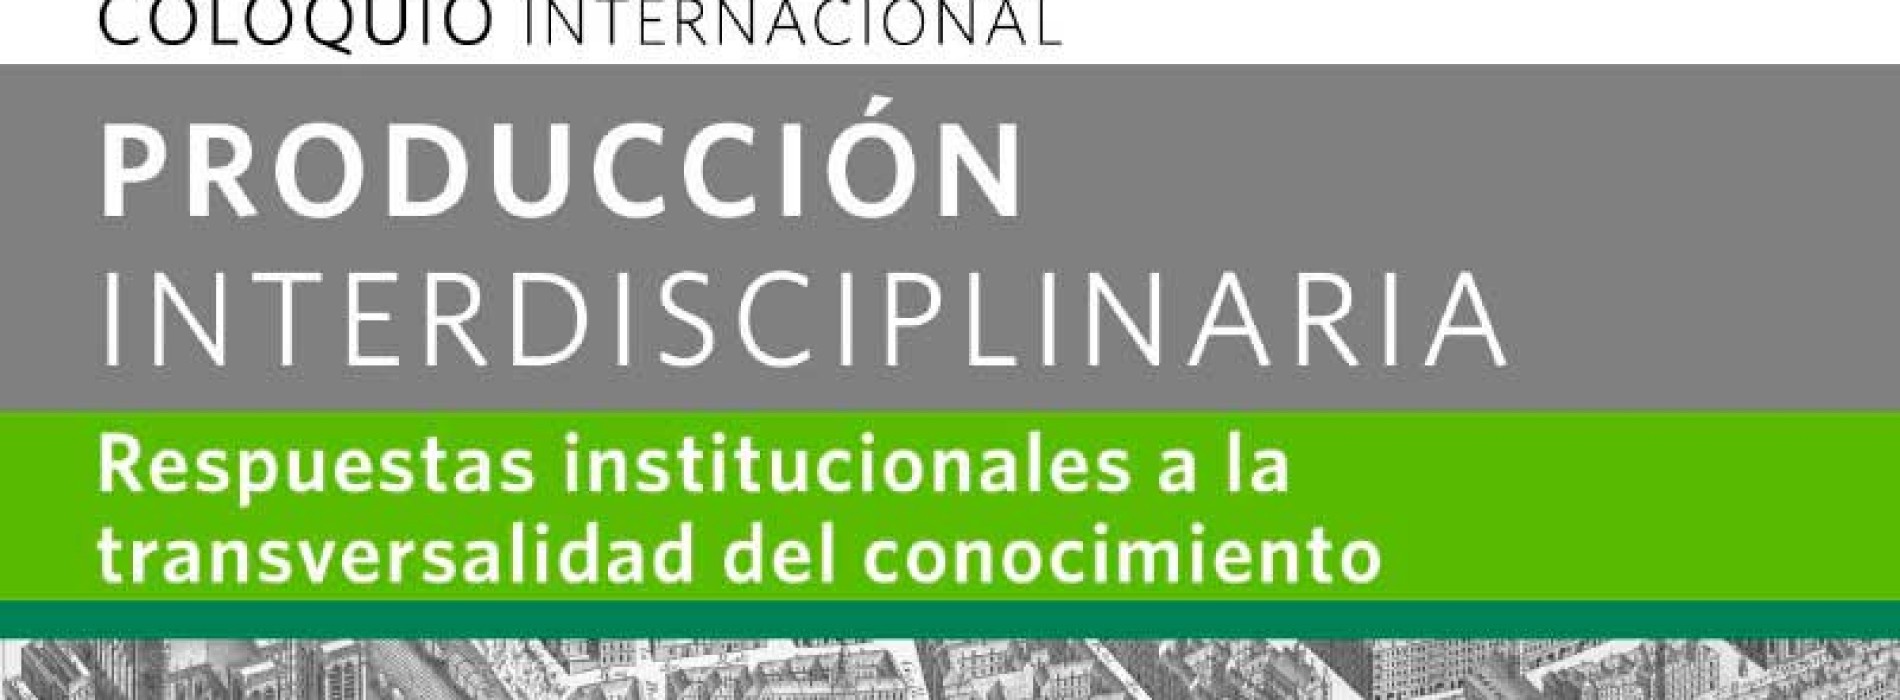 Coloquio Internacional Producción Interdisciplinaria